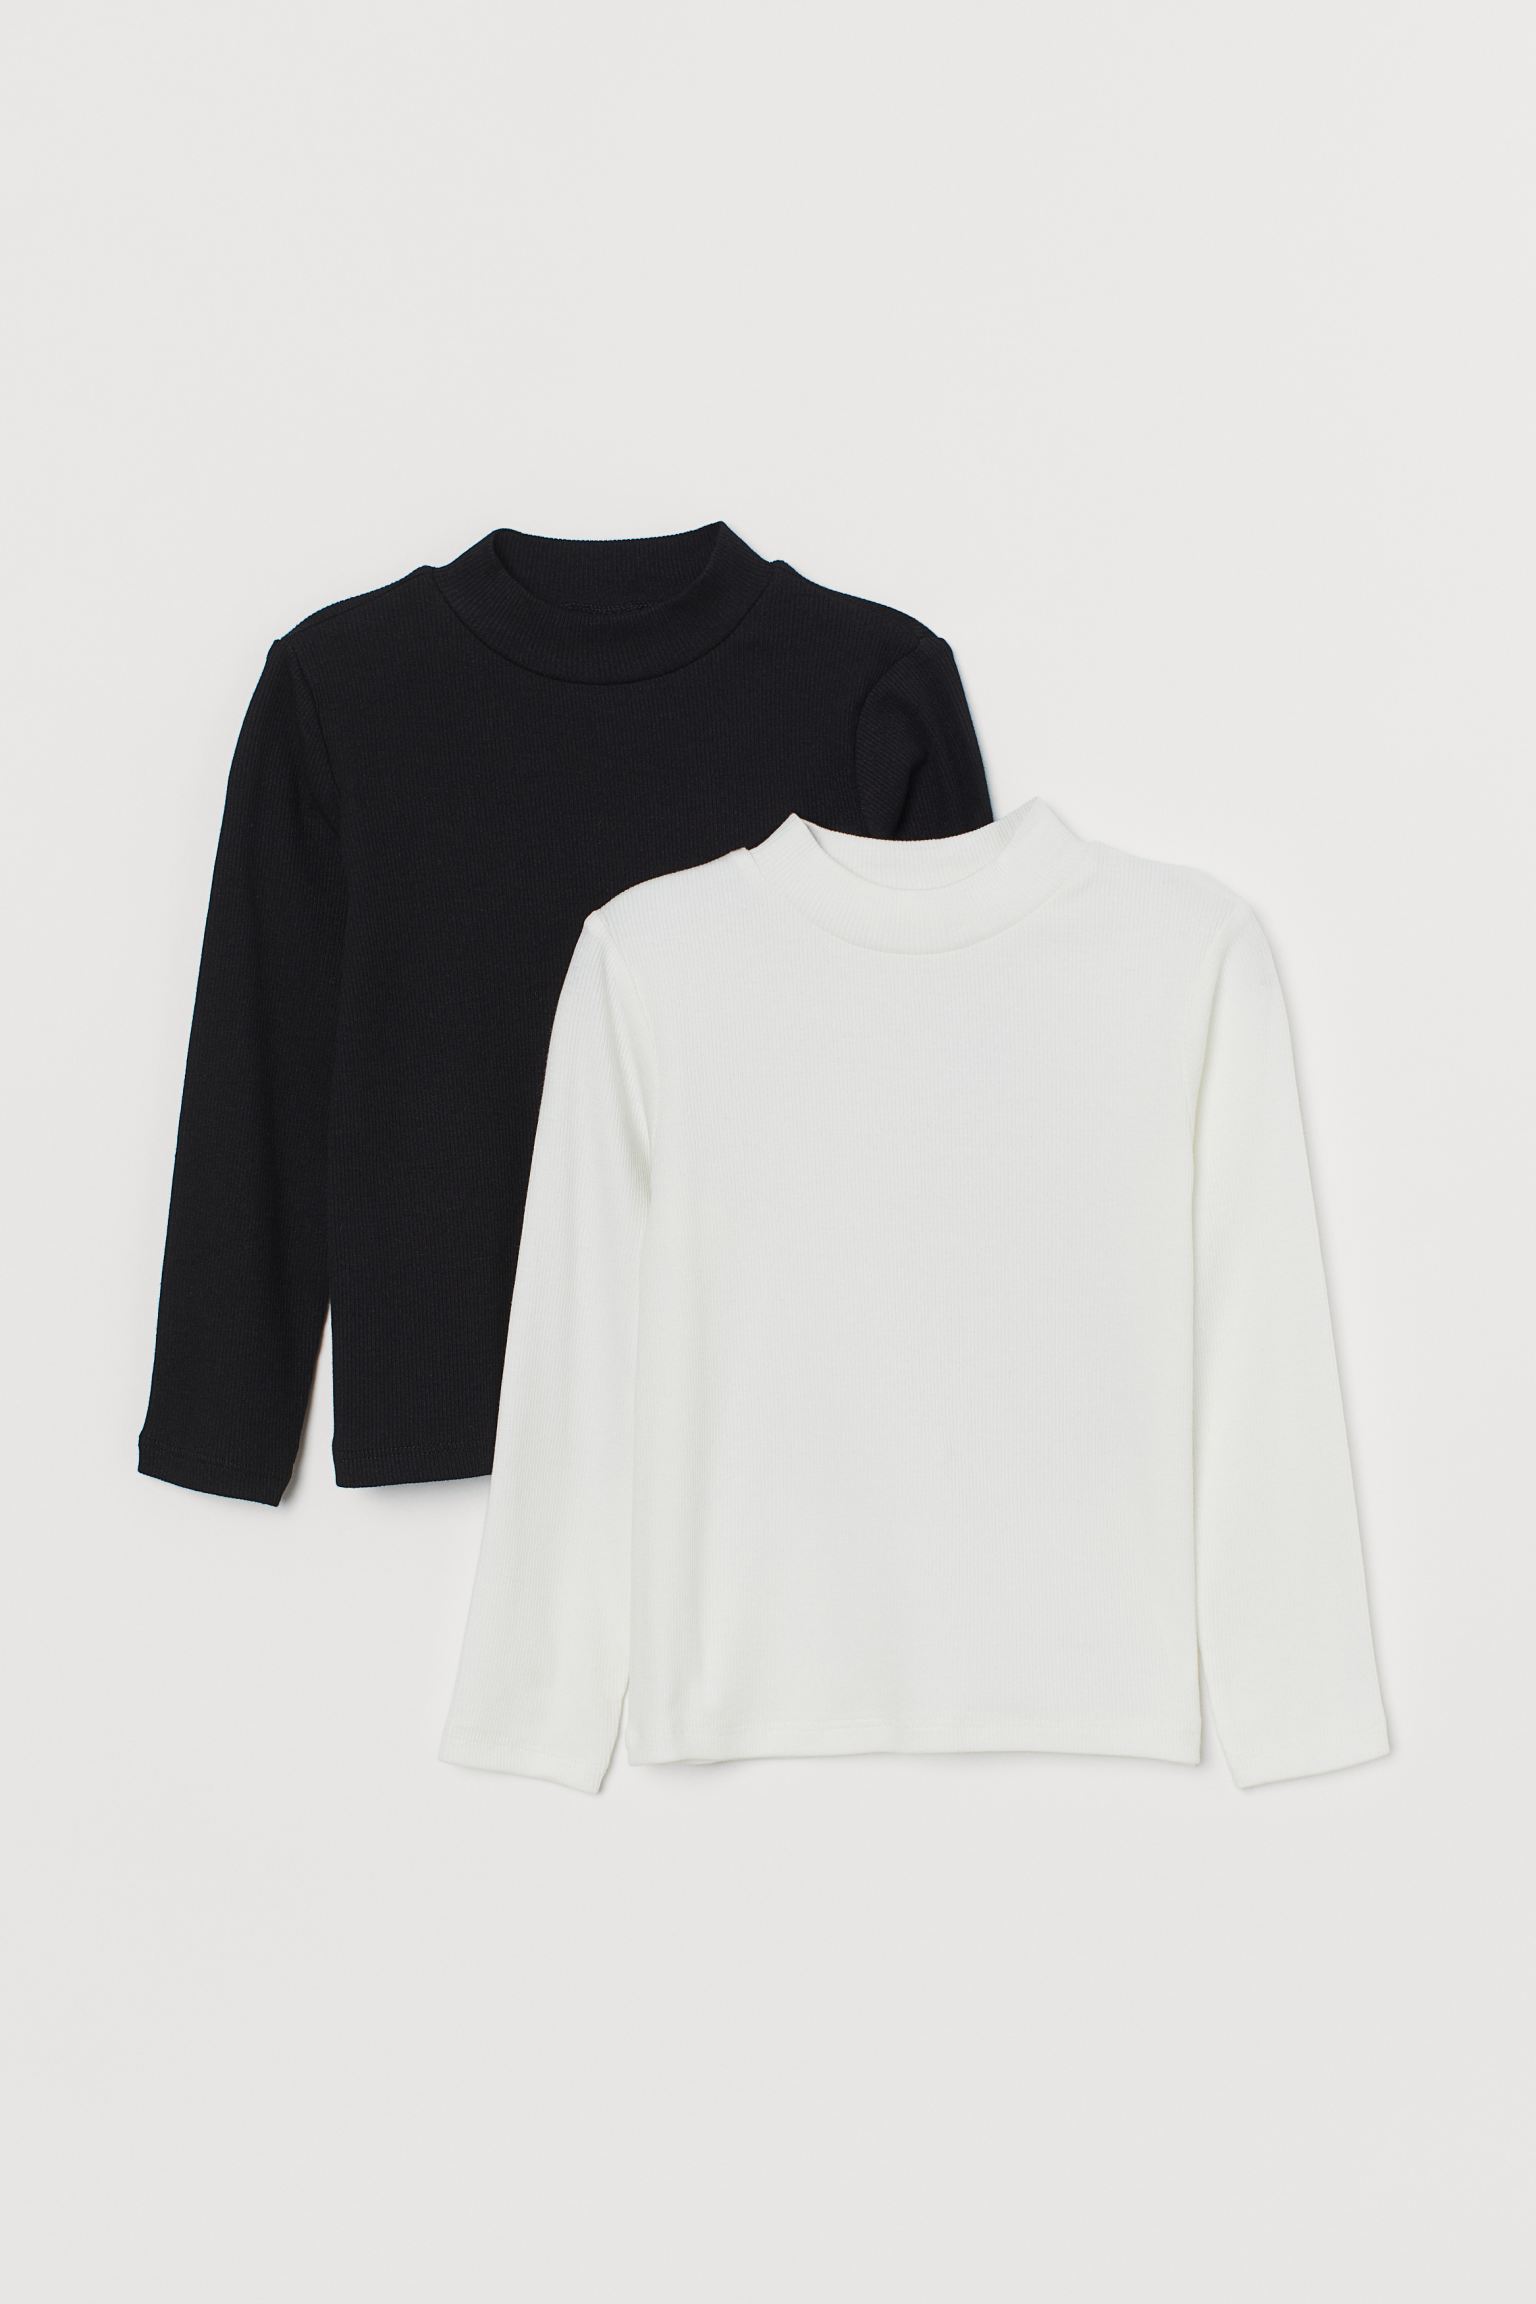 Комплект фуфаек H&M для девочек, черный, белый-042, размер 98/104, 395730042, 2 шт.